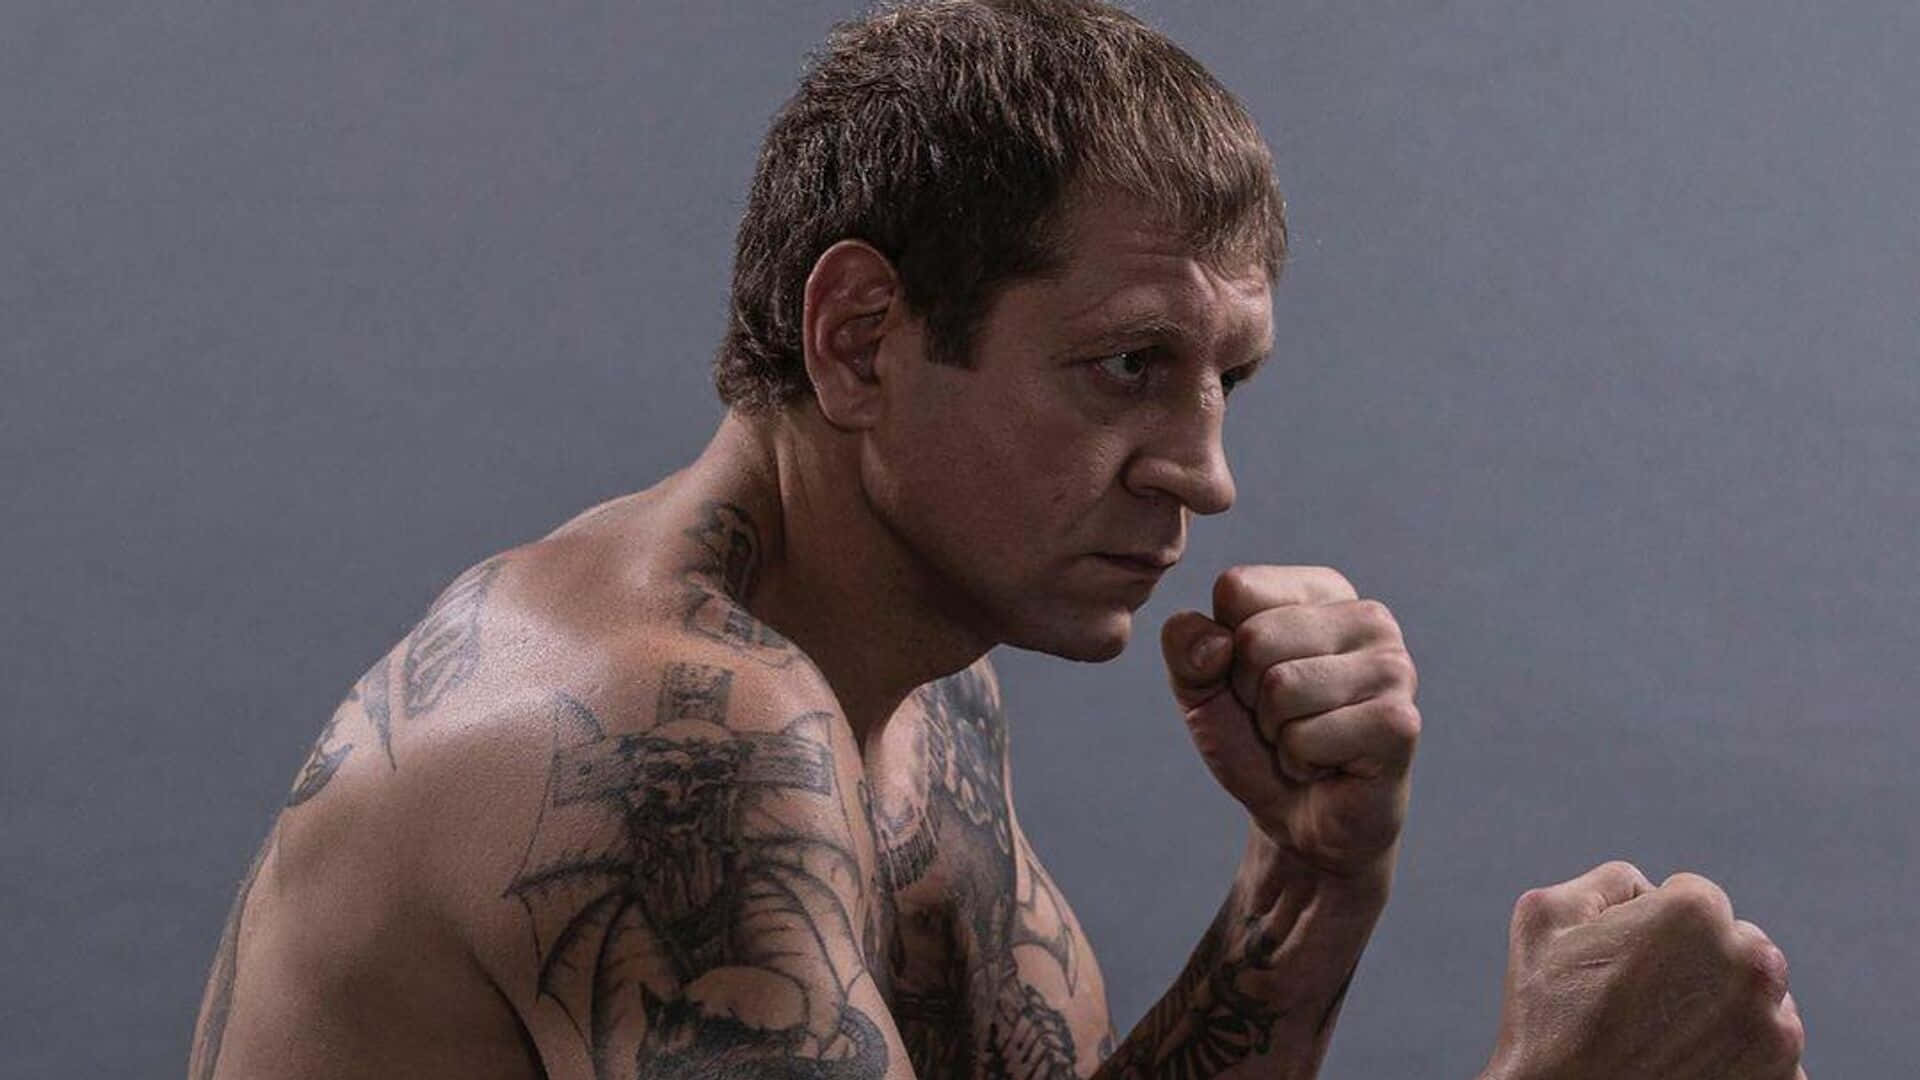 Imagende Aleksander Emelianenko, Luchador Ruso De Artes Marciales Mixtas, En Postura De Striking. Fondo de pantalla